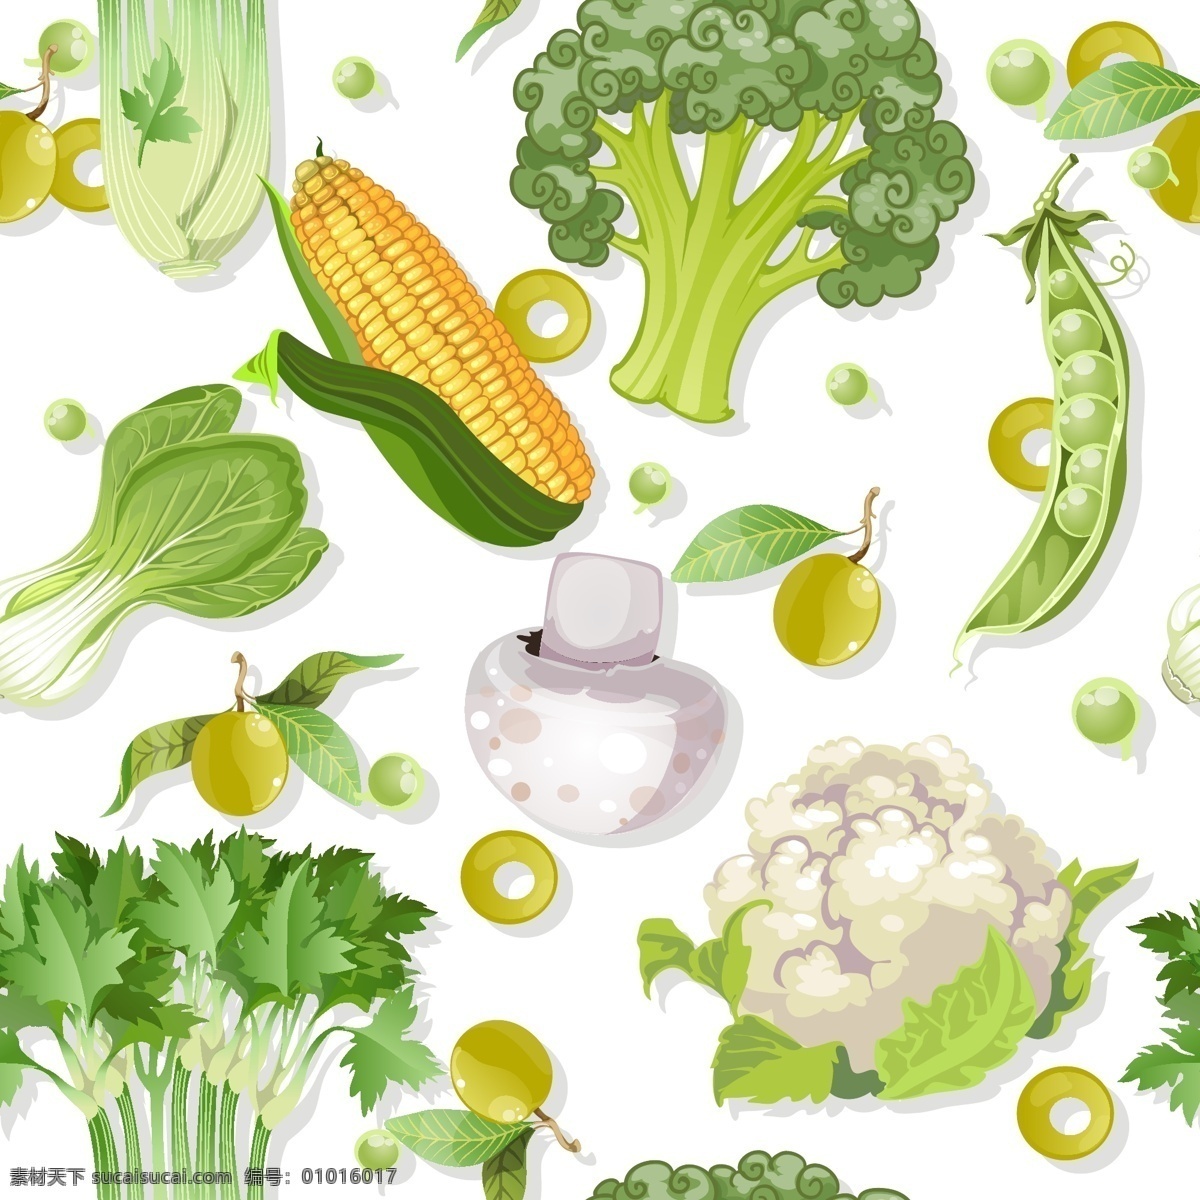 精美 蔬菜 矢量 白菜 背景 菜花 茄子 芹菜 矢量素材 豌豆 香菇 油菜 玉米 矢量图 日常生活